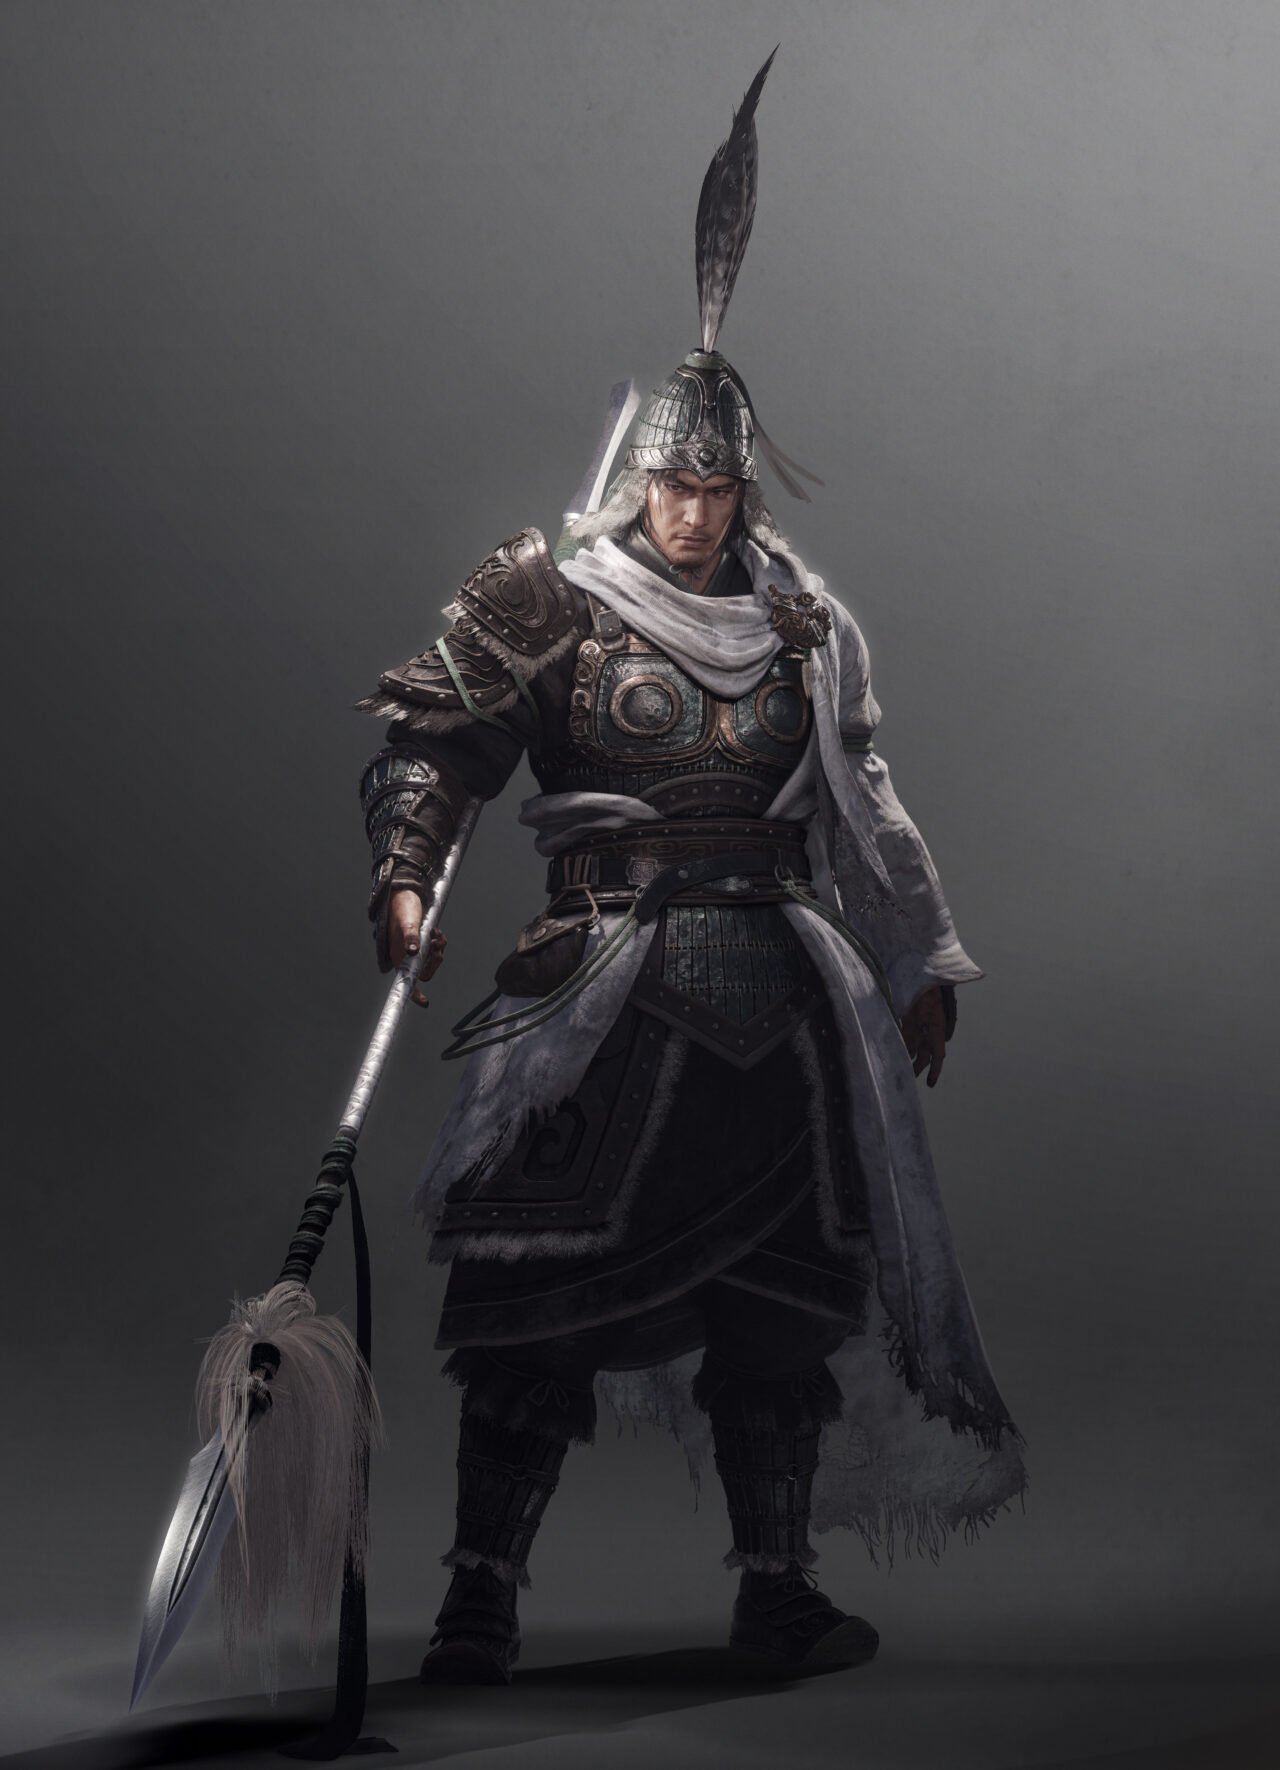 wo long: fallen dynasty armor sets